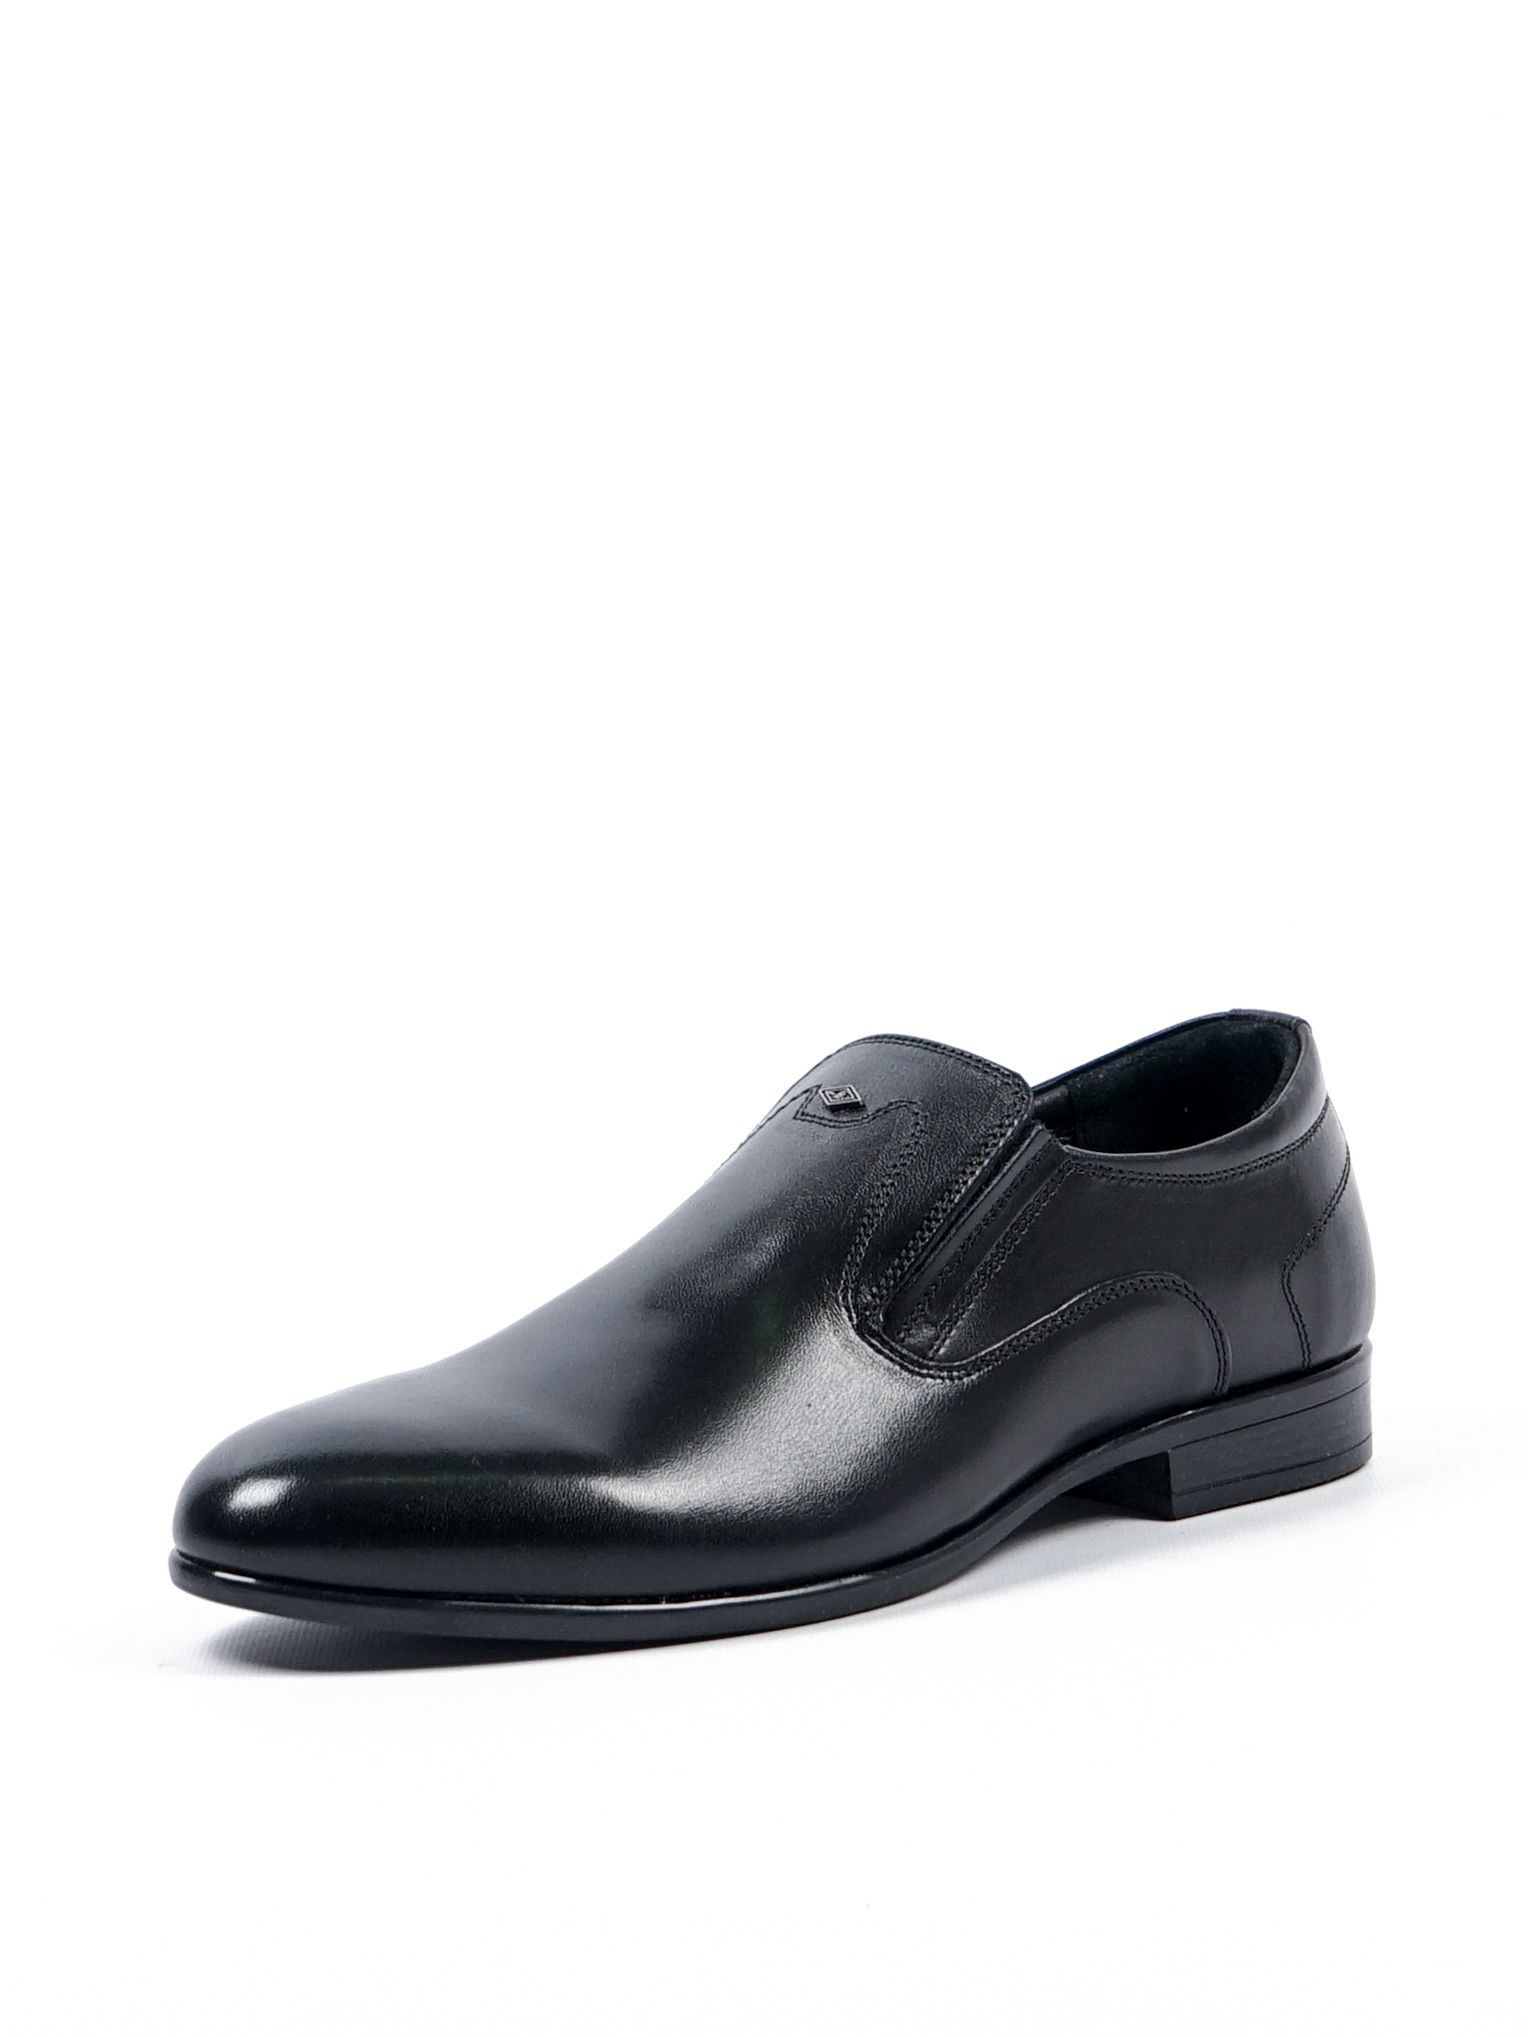 Туфли мужские Comfort Shoes 1098B черные 40 RU